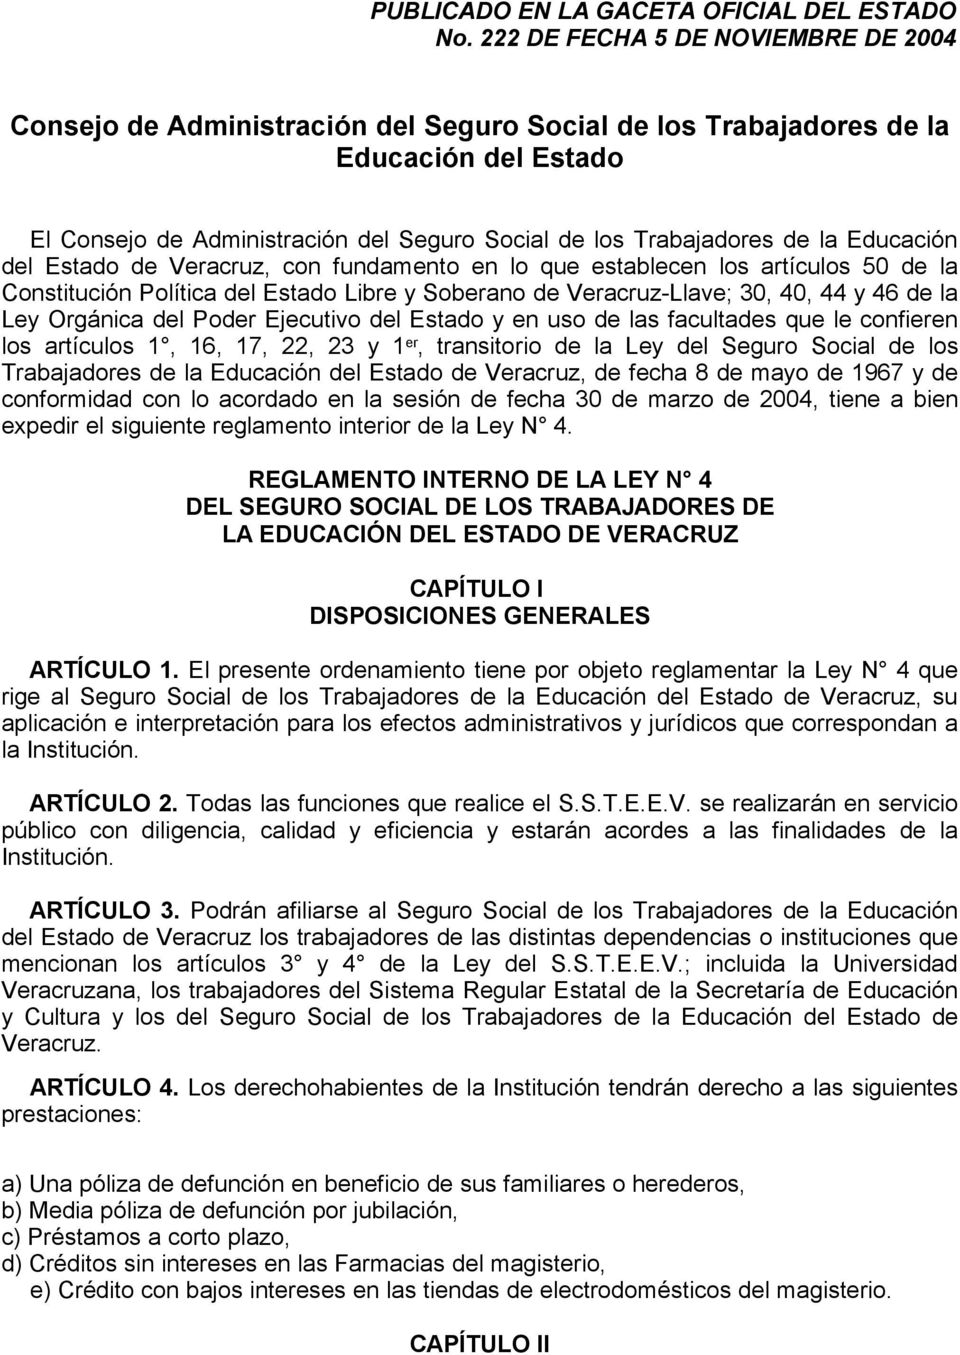 Educación del Estado de Veracruz, con fundamento en lo que establecen los artículos 50 de la Constitución Política del Estado Libre y Soberano de Veracruz-Llave; 30, 40, 44 y 46 de la Ley Orgánica